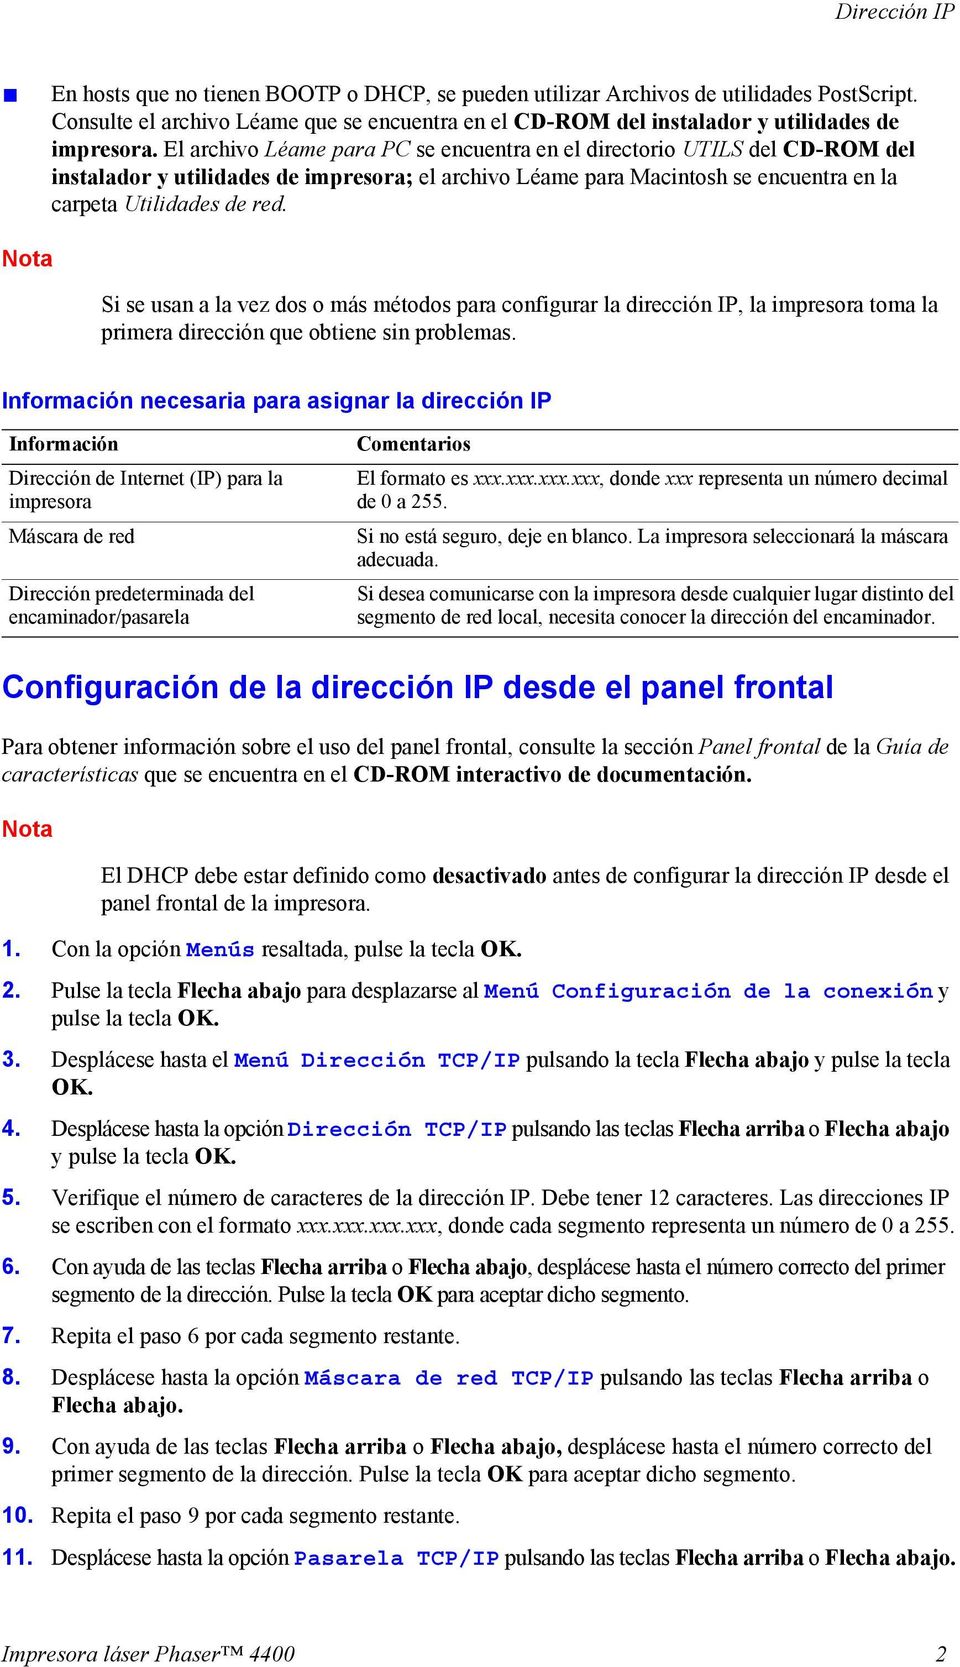 El archivo Léame para PC se encuentra en el directorio UTILS del CD-ROM del instalador y utilidades de impresora; el archivo Léame para Macintosh se encuentra en la carpeta Utilidades de red.